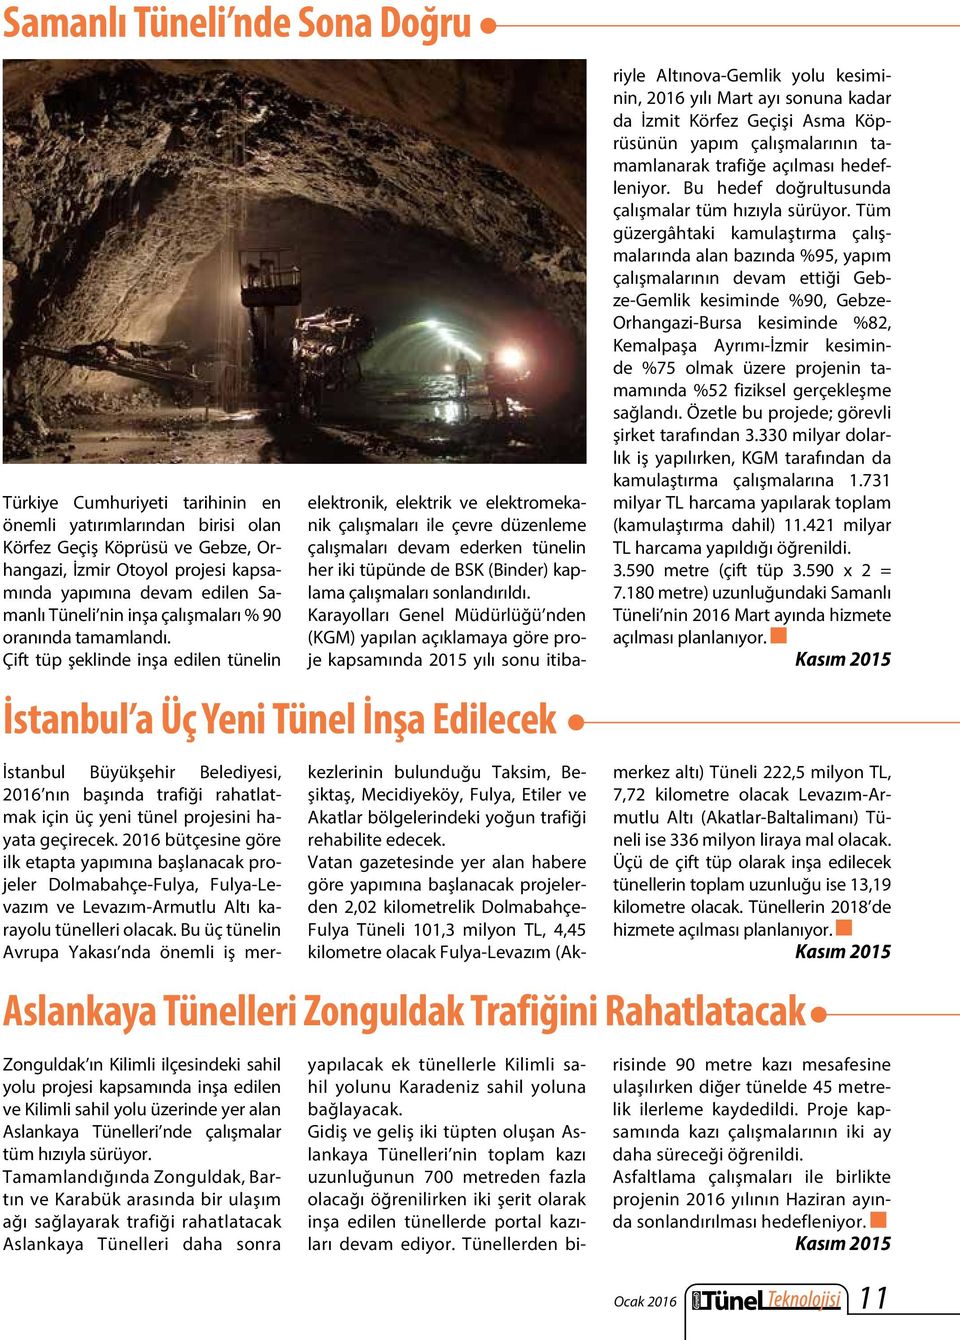 Çift tüp şeklinde inşa edilen tünelin Zonguldak ın Kilimli ilçesindeki sahil yolu projesi kapsamında inşa edilen ve Kilimli sahil yolu üzerinde yer alan Aslankaya Tünelleri nde çalışmalar tüm hızıyla